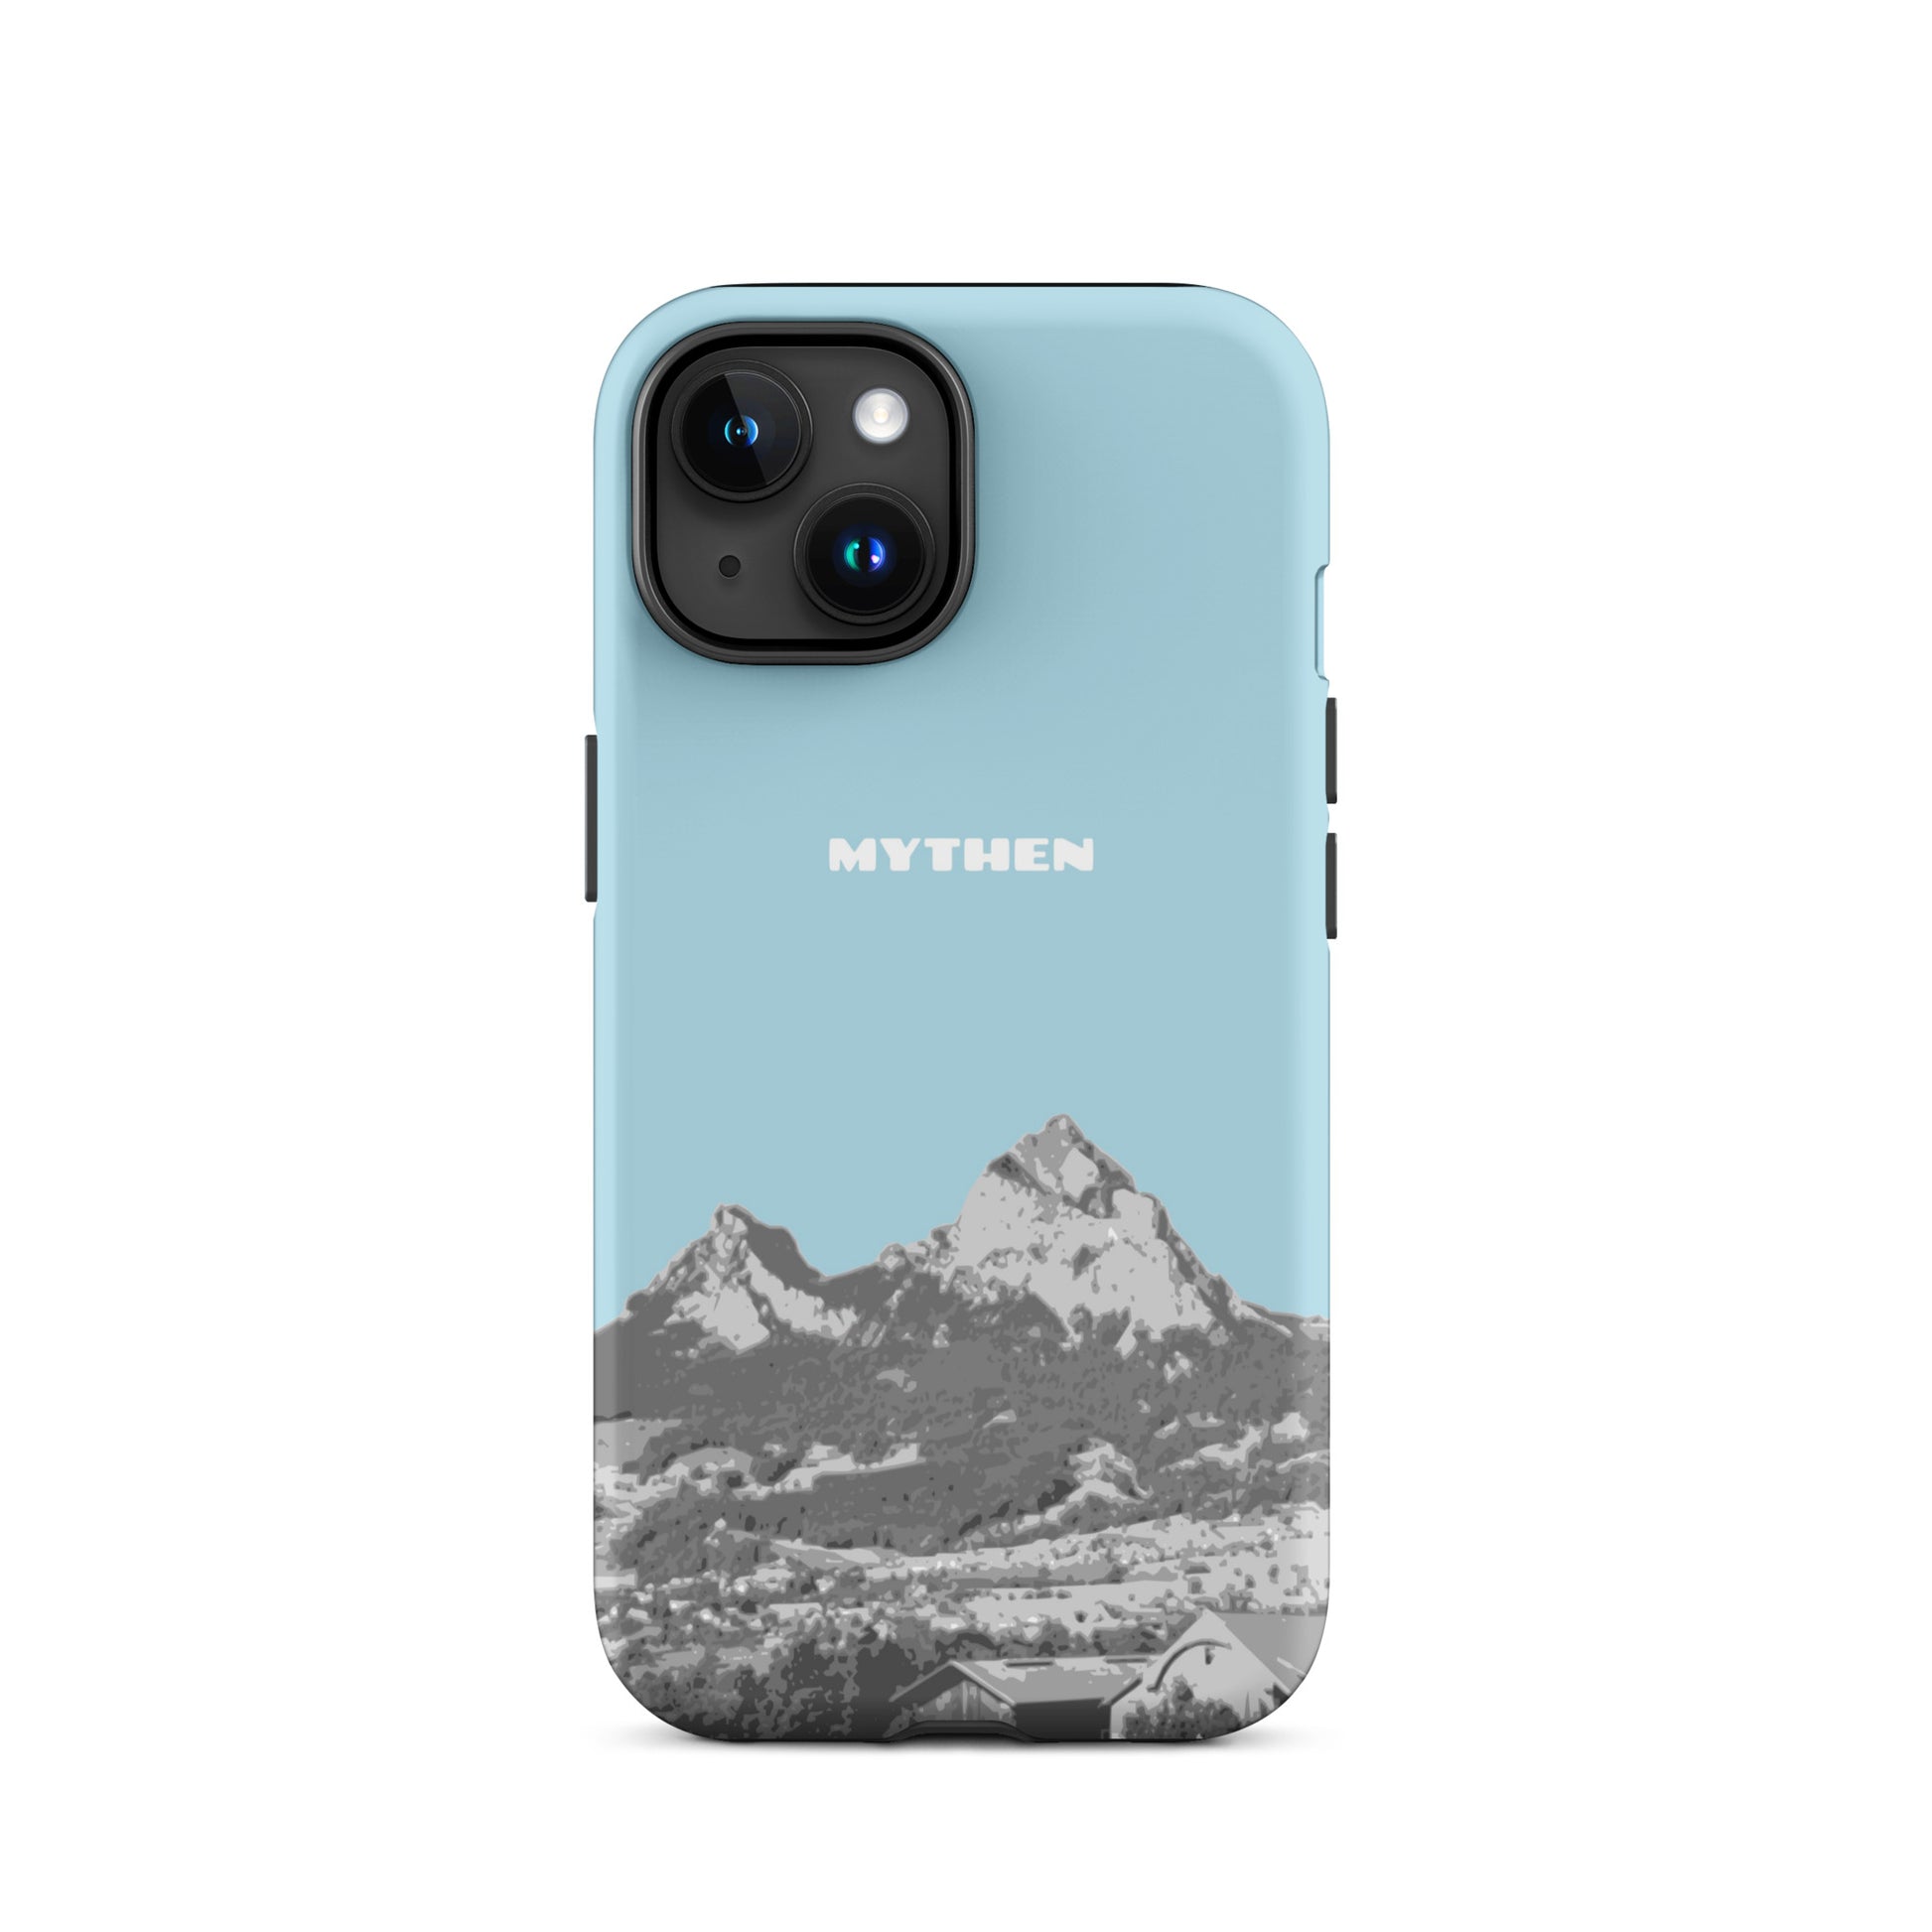 Hülle für das iPhone 15 von Apple in der Farbe Hellblau, die den Grossen Mythen und den Kleinen Mythen bei Schwyz zeigt. 